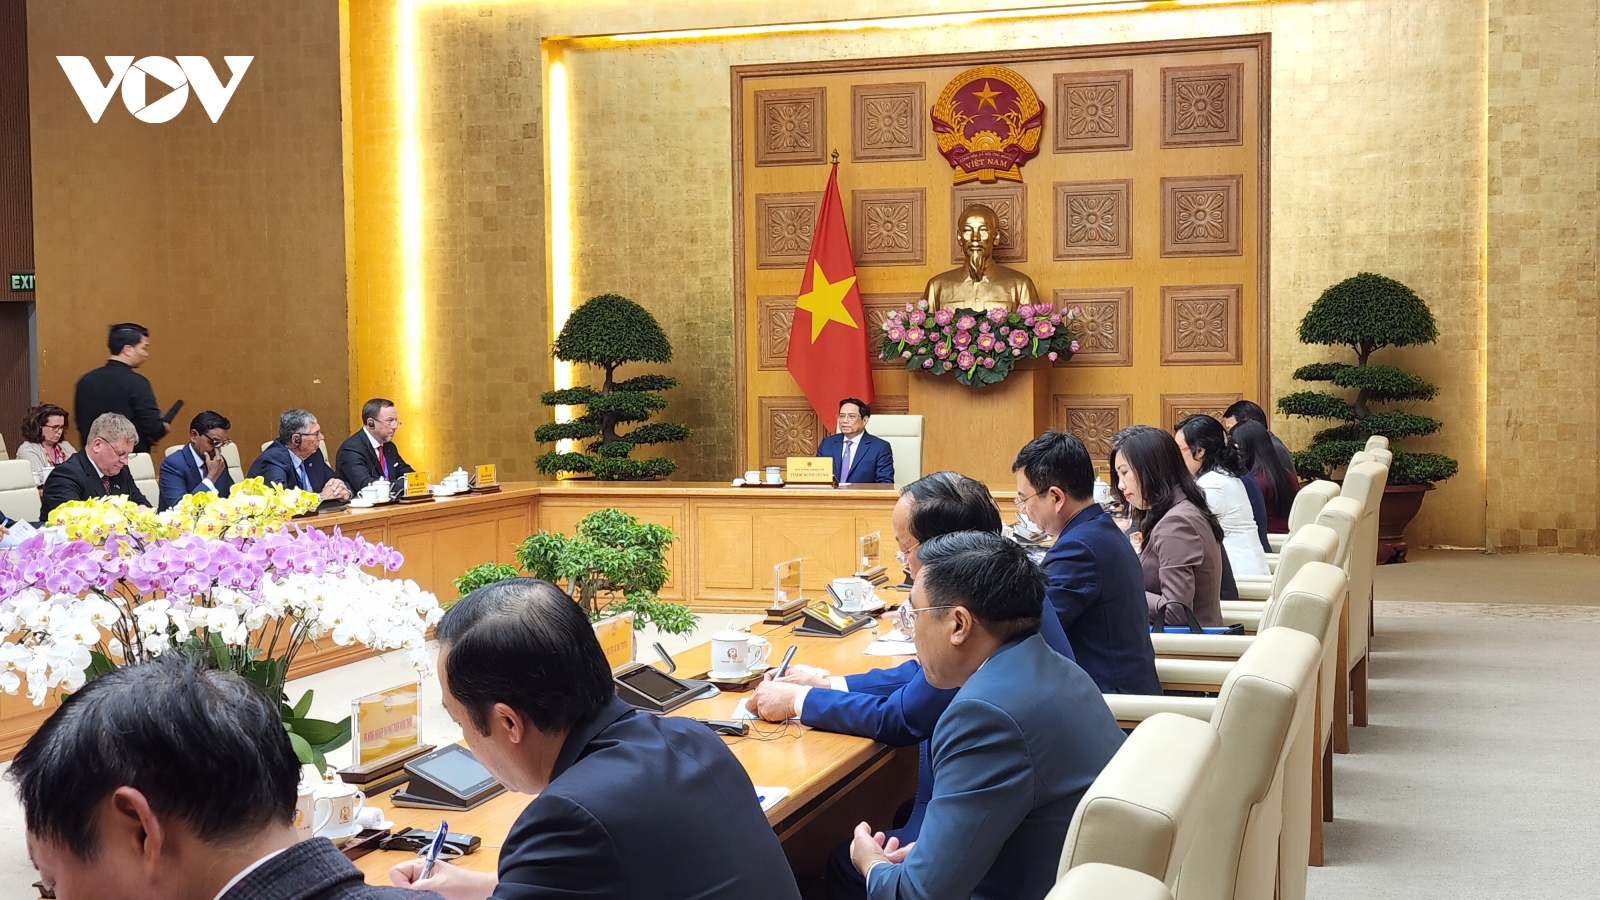 Thúc đẩy quan hệ kinh tế, thương mại và đầu tư giữa Việt Nam và EU